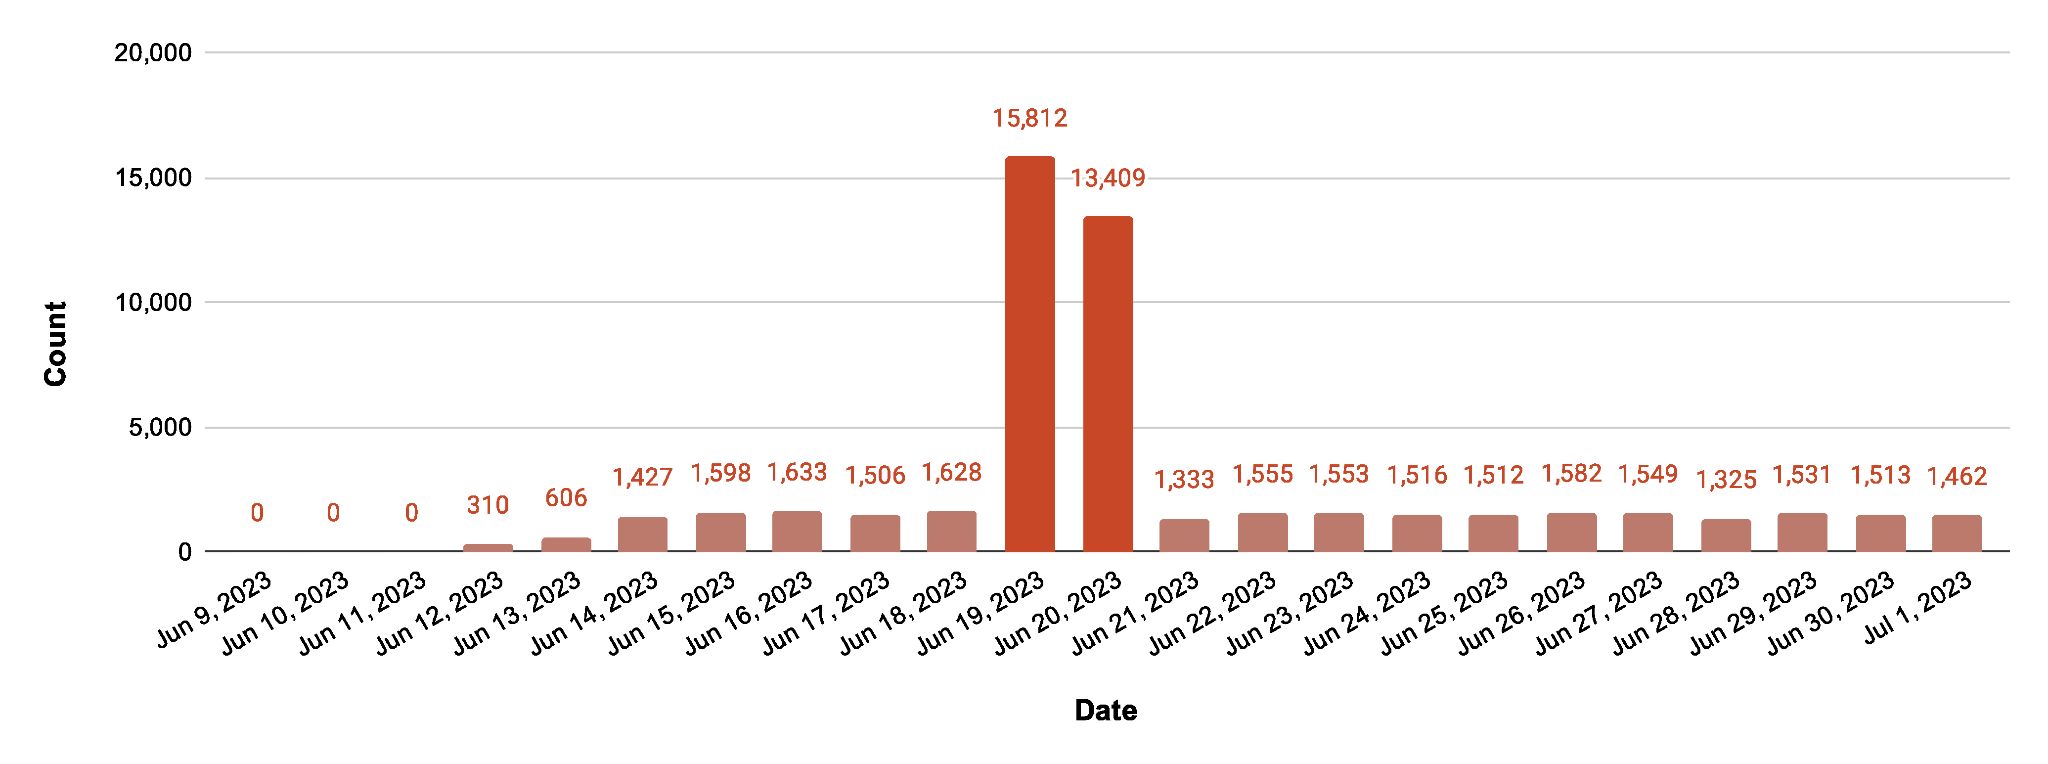 A imagem 3 é um diagrama de colunas da contagem de alvos verificados exclusivos para a vulnerabilidade Zyxel. O gráfico começa em 9 de junho de 2023 e termina em 1º de julho de 2023. A maioria das datas tem uma média de cerca de 1.500. Dois picos significativos são 19 de junho de 2023 e 20 de junho de 2023. As contagens para essas datas são 15.812 e 13.409, respectivamente.